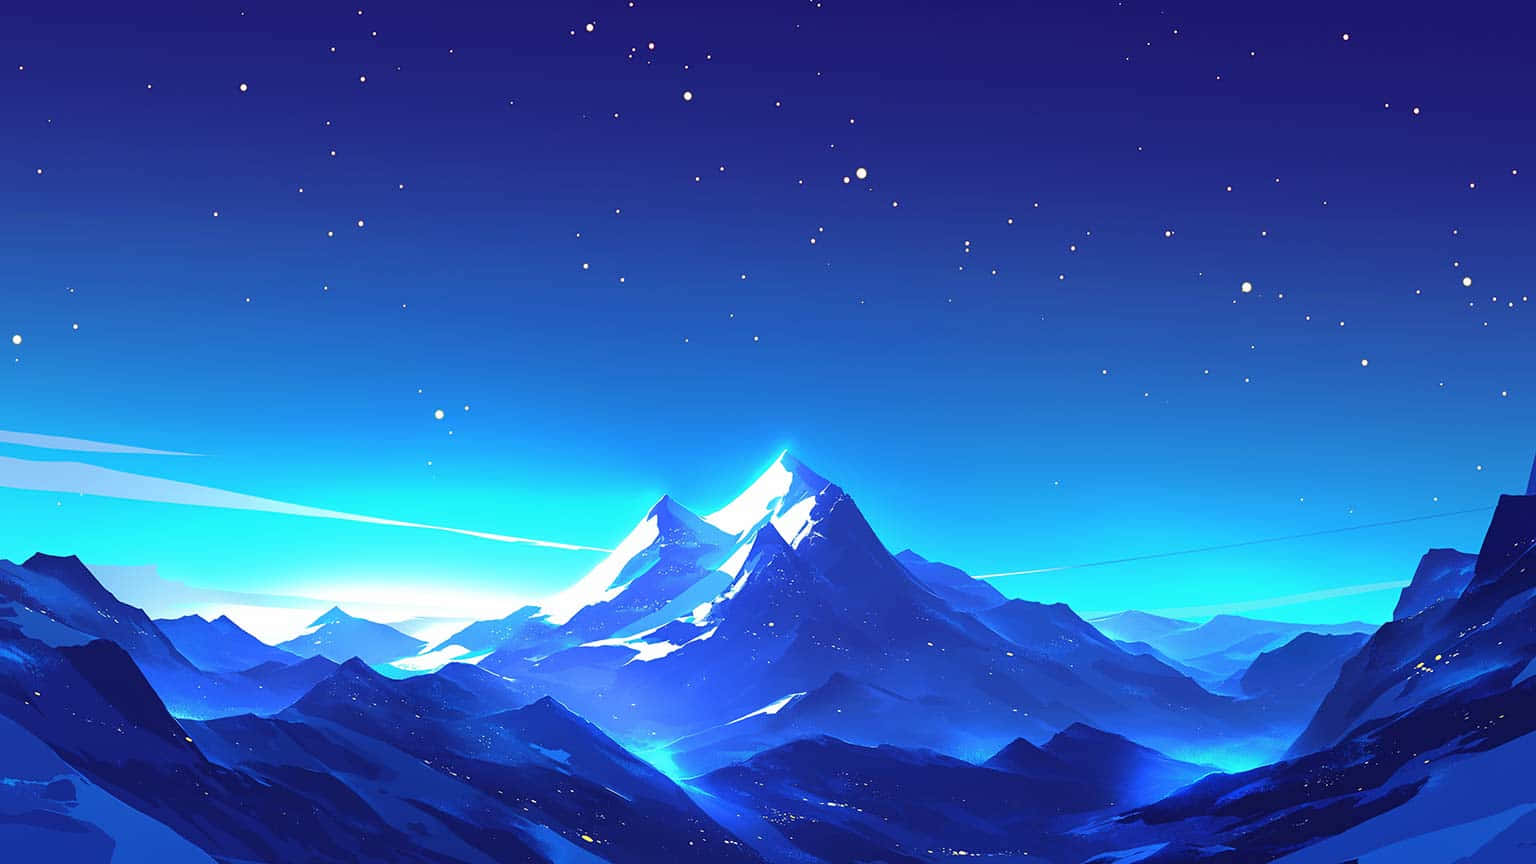 Starry Night Mountain Landscape Wallpaper